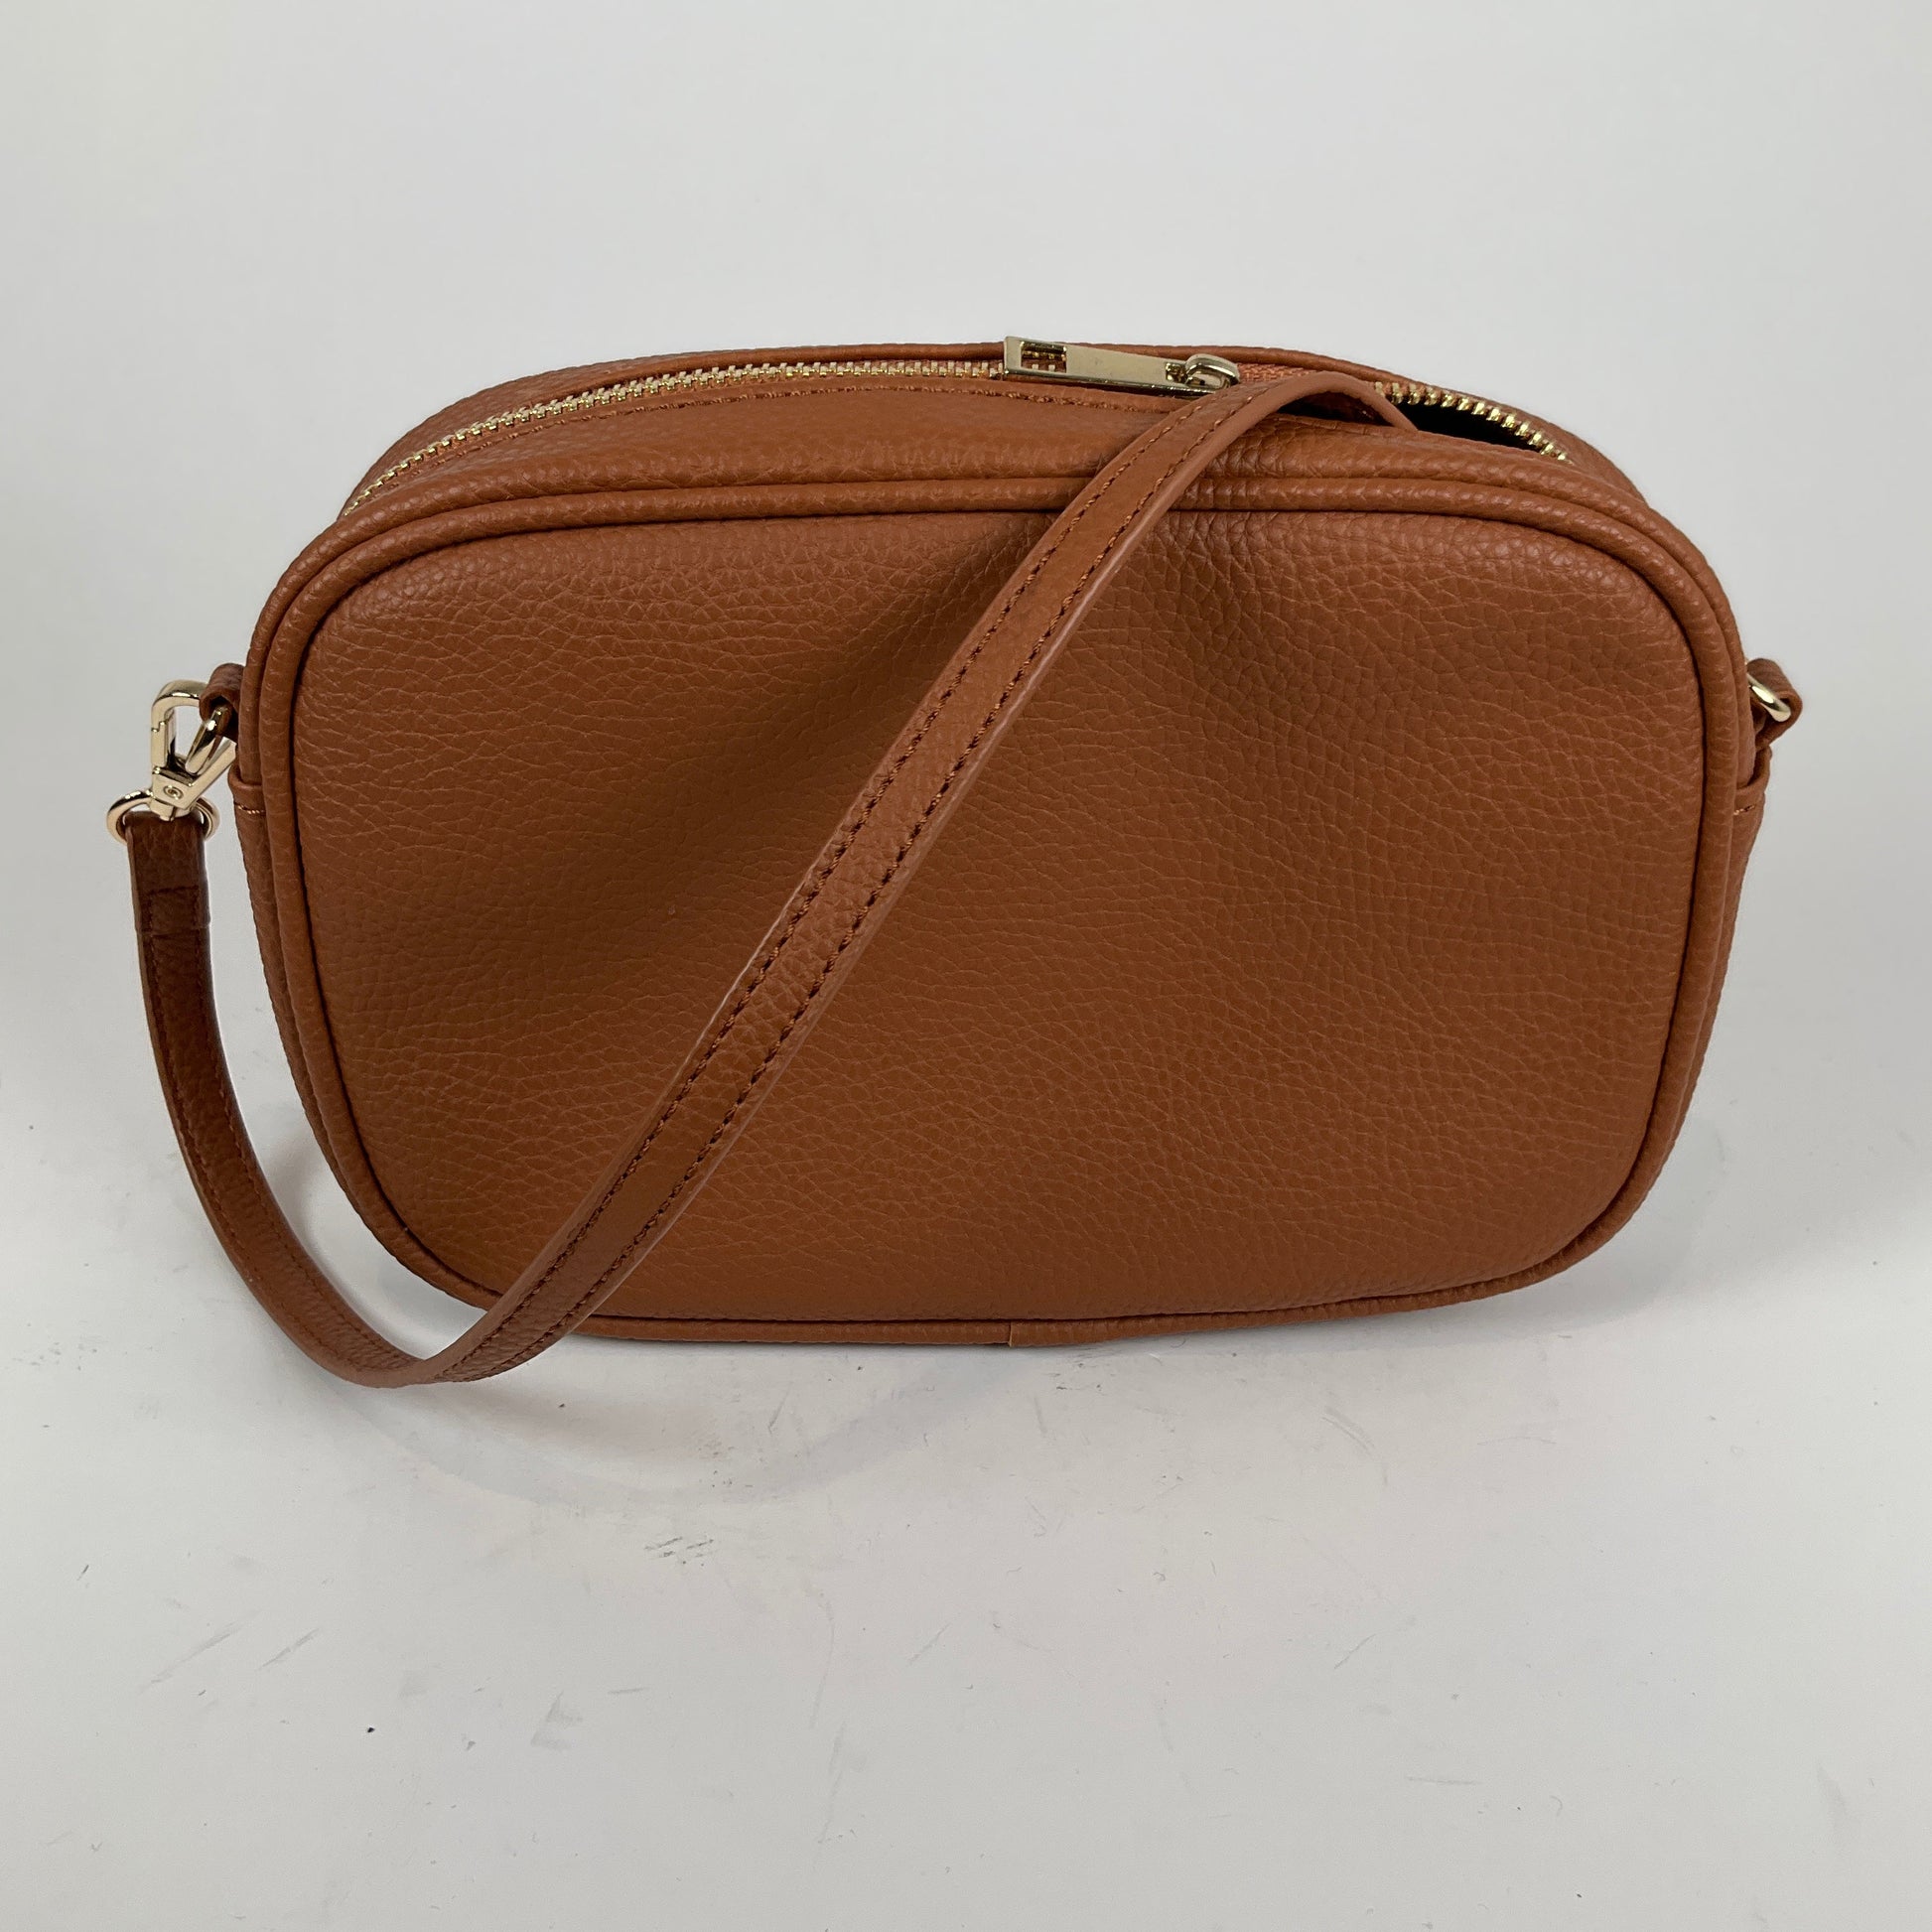 Ladies Shoulder Purse Tan Handbags Wallets & Cases